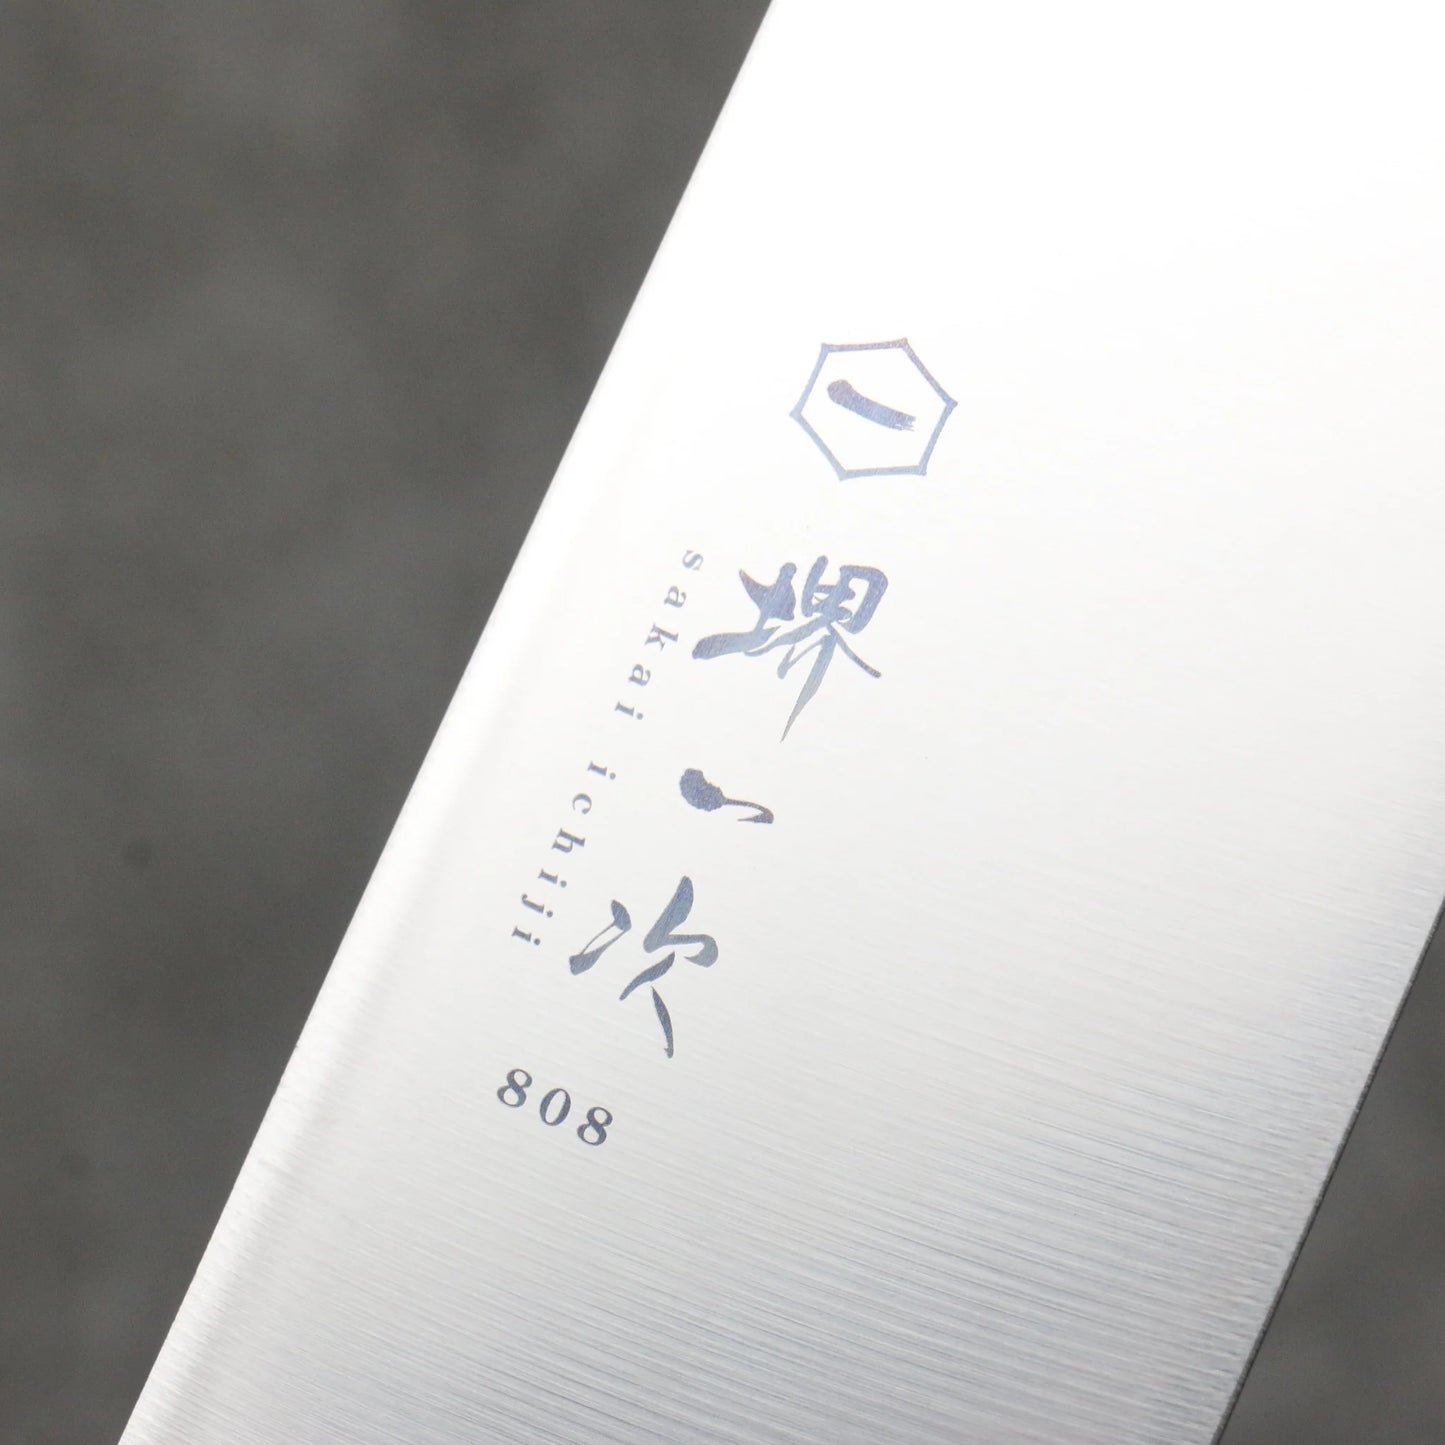 Thương hiệu Sakai Ichiji 808 Lưỡi dao kiểu ngao Dao đa năng Santoku 180mm chuôi dao bằng gỗ dán màu nâu nhạt